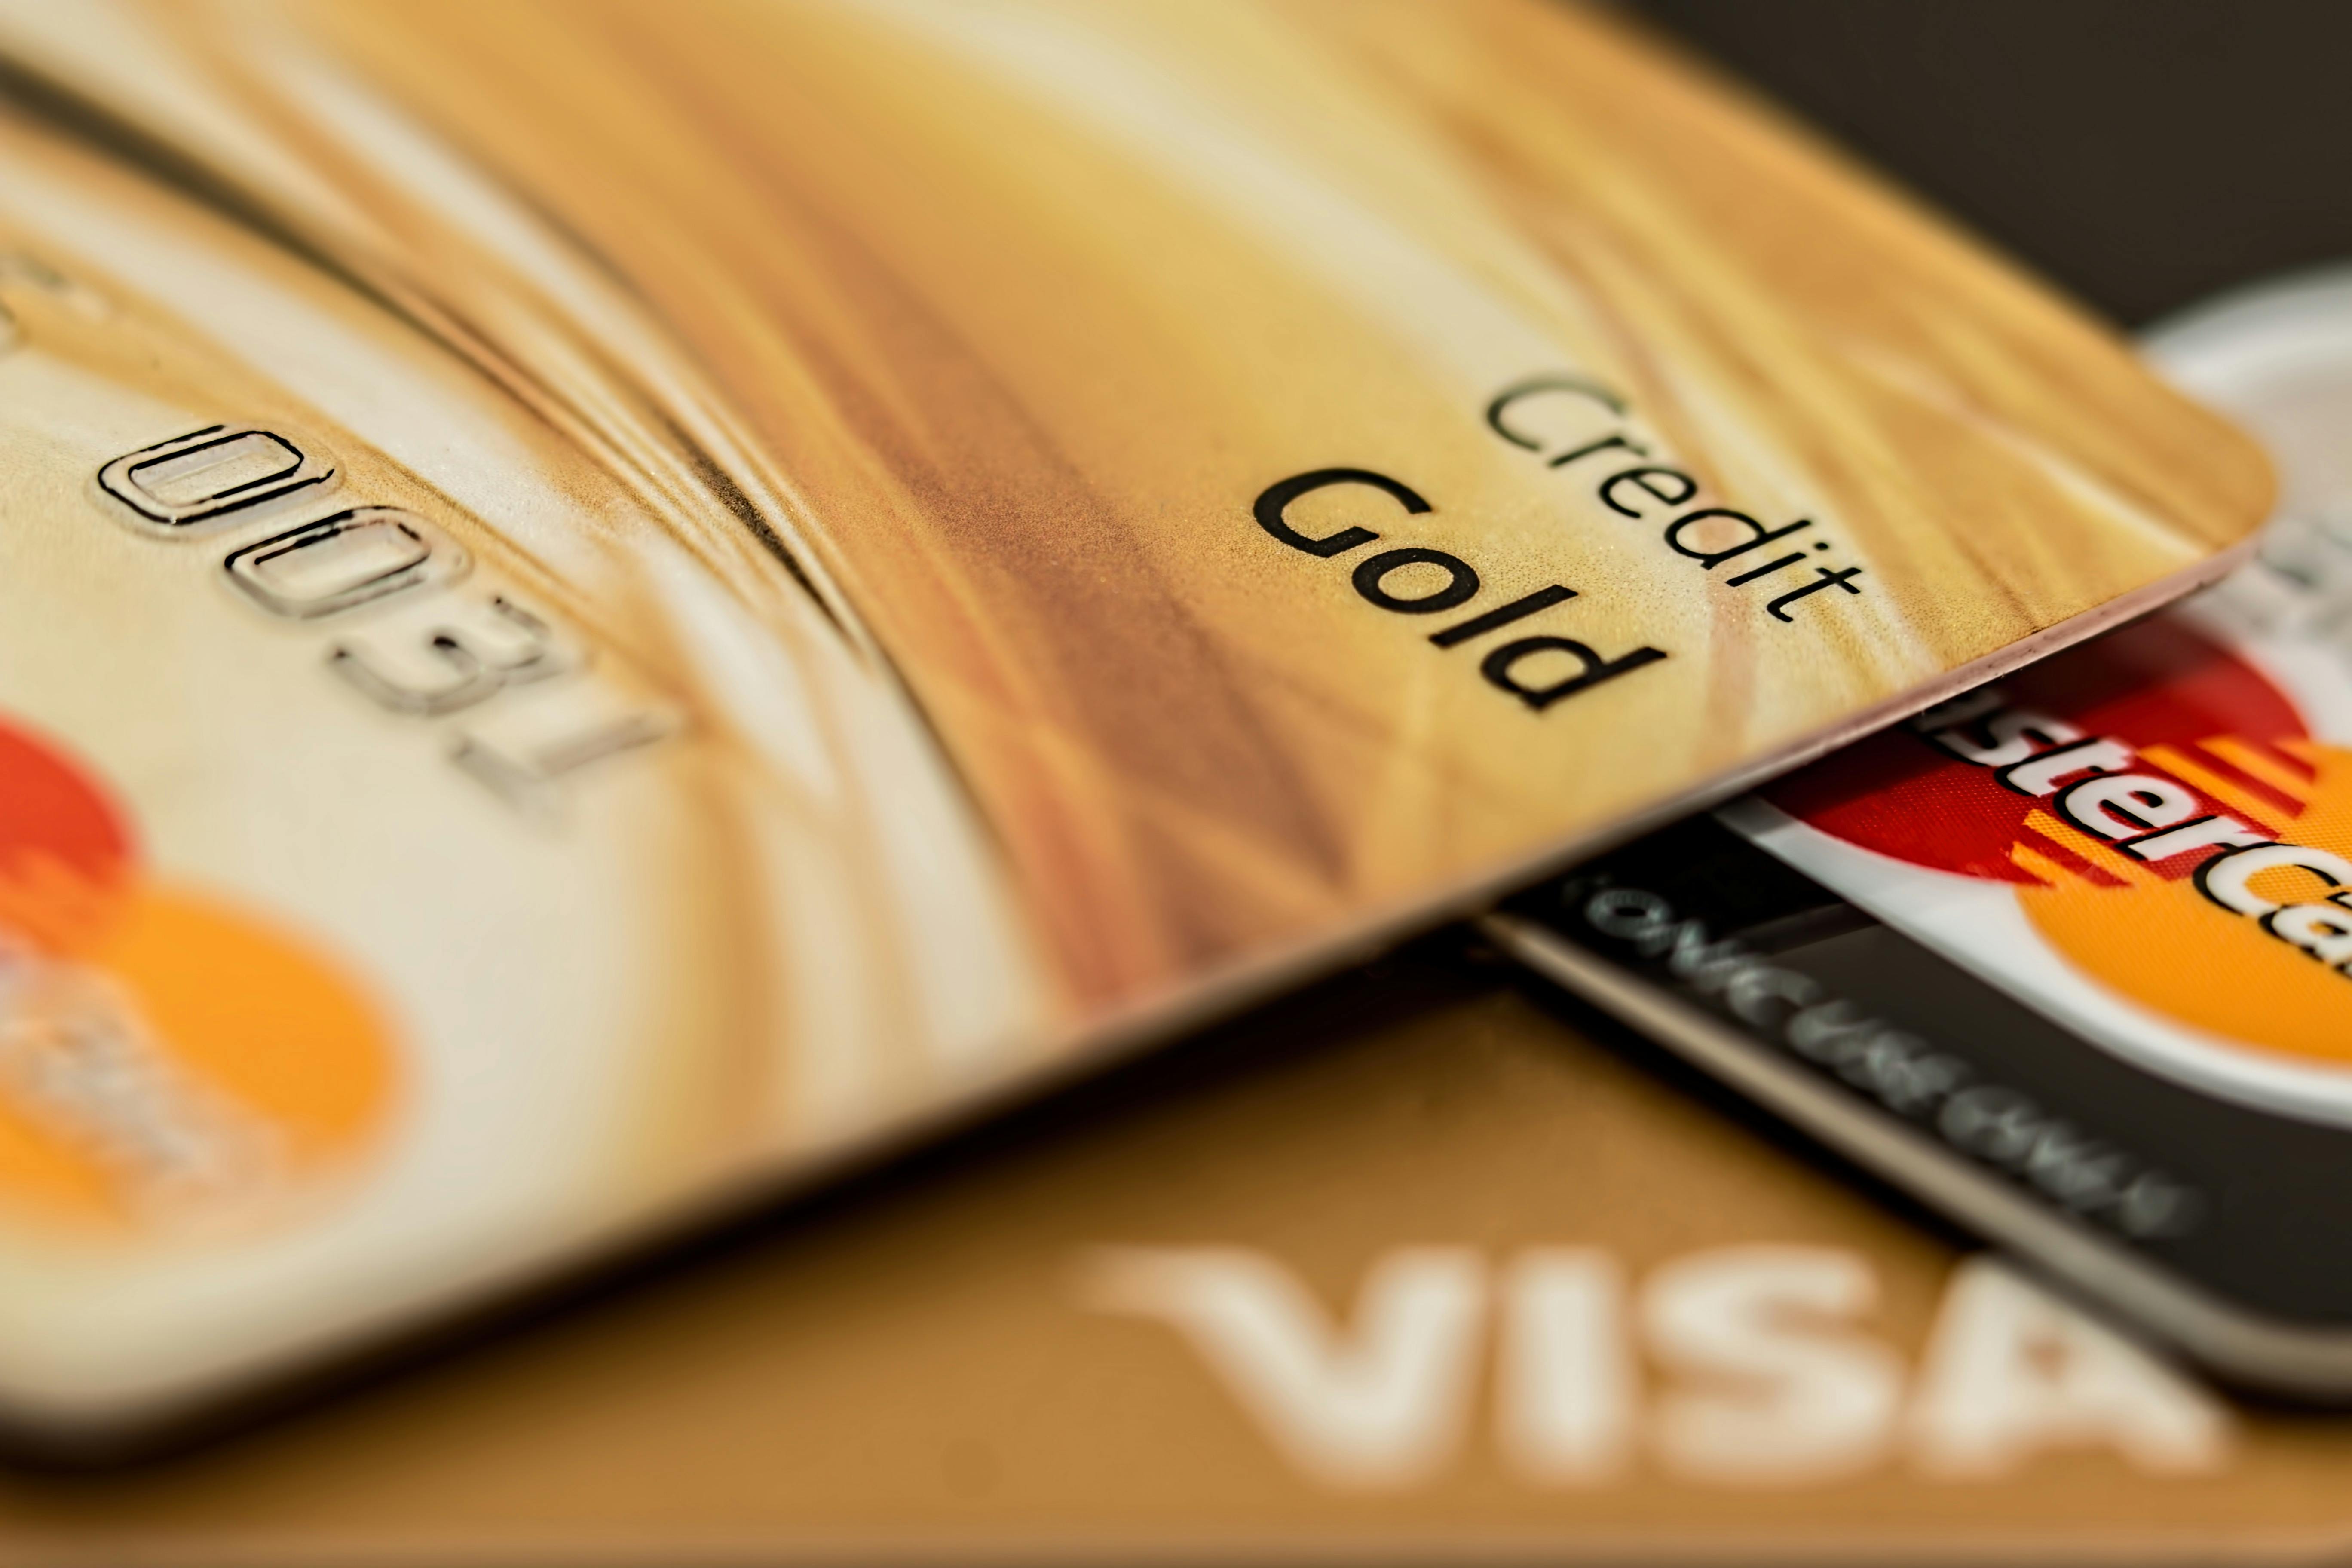 Ein Stapel von Kreditkarten | Quelle: Pexels